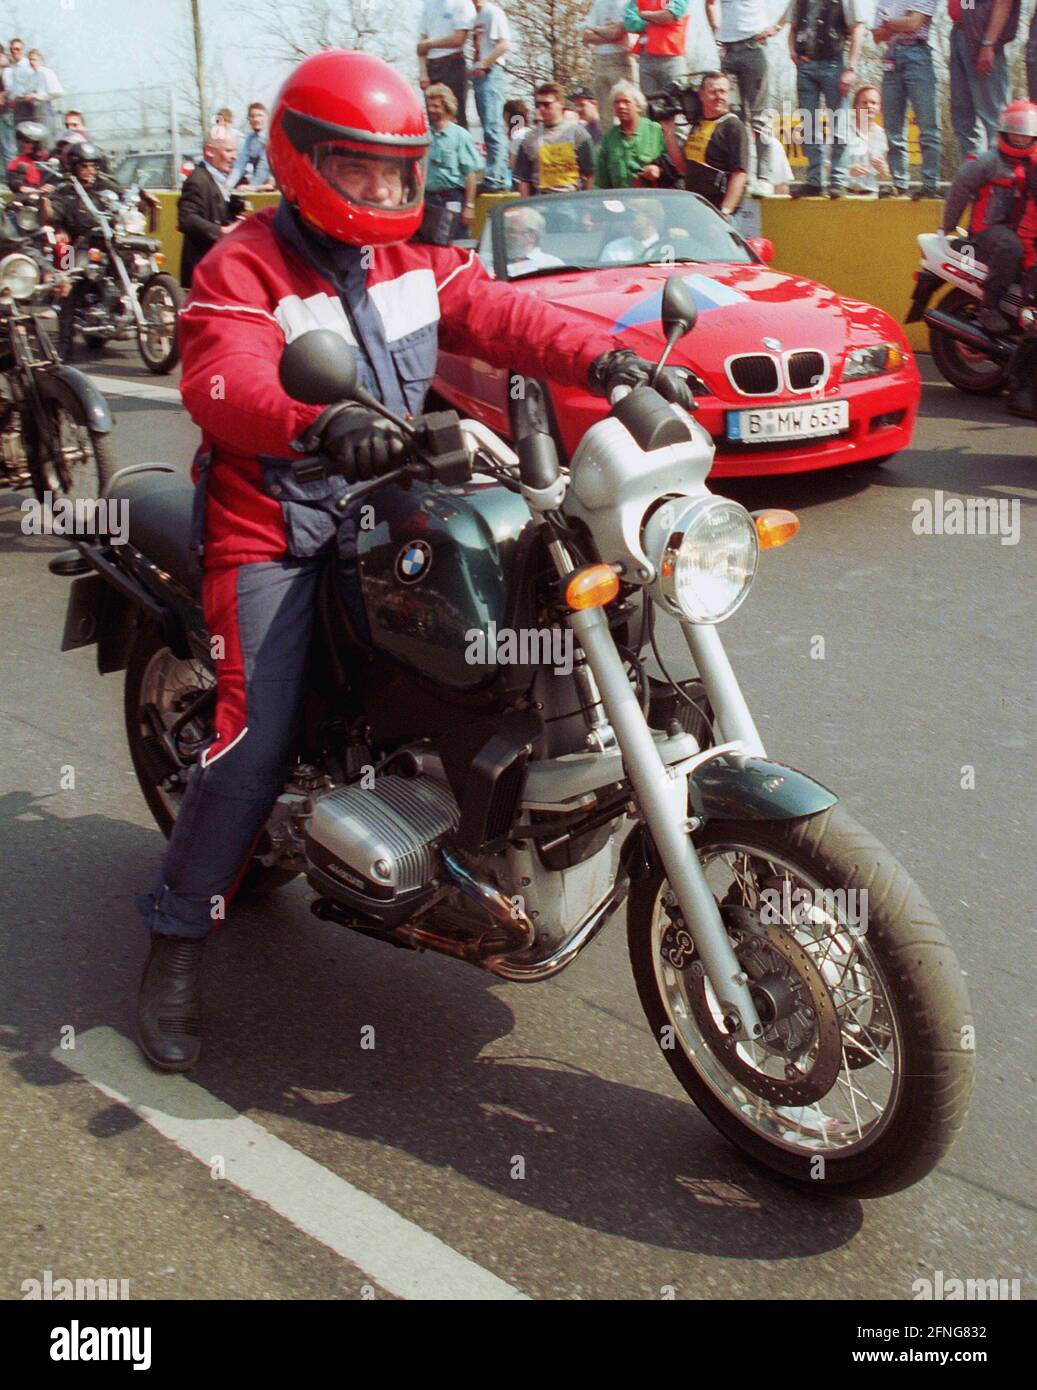 Berlino / Brandenburgo / unificazione / 20.4.1996 Manfred Stolpe, SPD, con casco per moto. Parata motociclistica sull'AVUS durante una campagna per l'unificazione degli stati di Berlino e Brandeburgo, il referendum è fallito. [traduzione automatizzata] Foto Stock